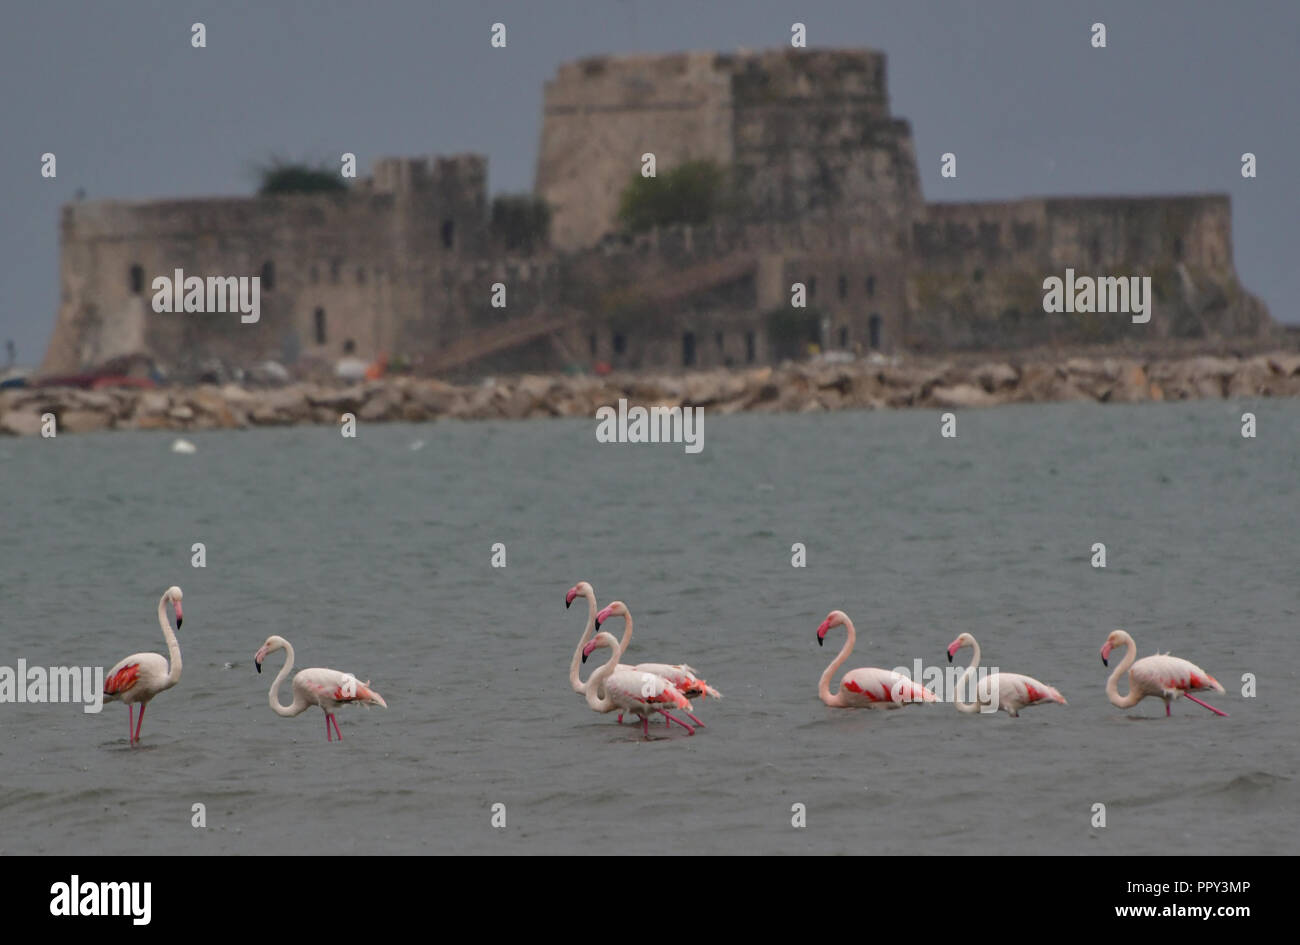 Nafplion, Griechenland. 28. September 2018. Hunderte sind die Ankünfte von Flamingo in den letzten Stunden in der nafplion - Nea Kios Wasservögel zieht die Blicke der lokalen und vorbei an Fahrer heute Freitag, 28. September 2018. Das schlechte Wetter der letzten Tage und die kommende Mediterrane Hurrikan 'Zorbas'' die Flamingos von Hunderten gebracht das Feuchtgebiet Nea Kios Nafplion, bietet eine beispiellose Spektakel. Die Flamingos im Feuchtgebiet bleiben, bis das schlechte Wetter verblasst und dann Ihre Migration Reise in den Süden und auf der Arabischen Halbinsel fort. Credit: VANGELIS BOUGIOTIS/Alamy Stockfoto